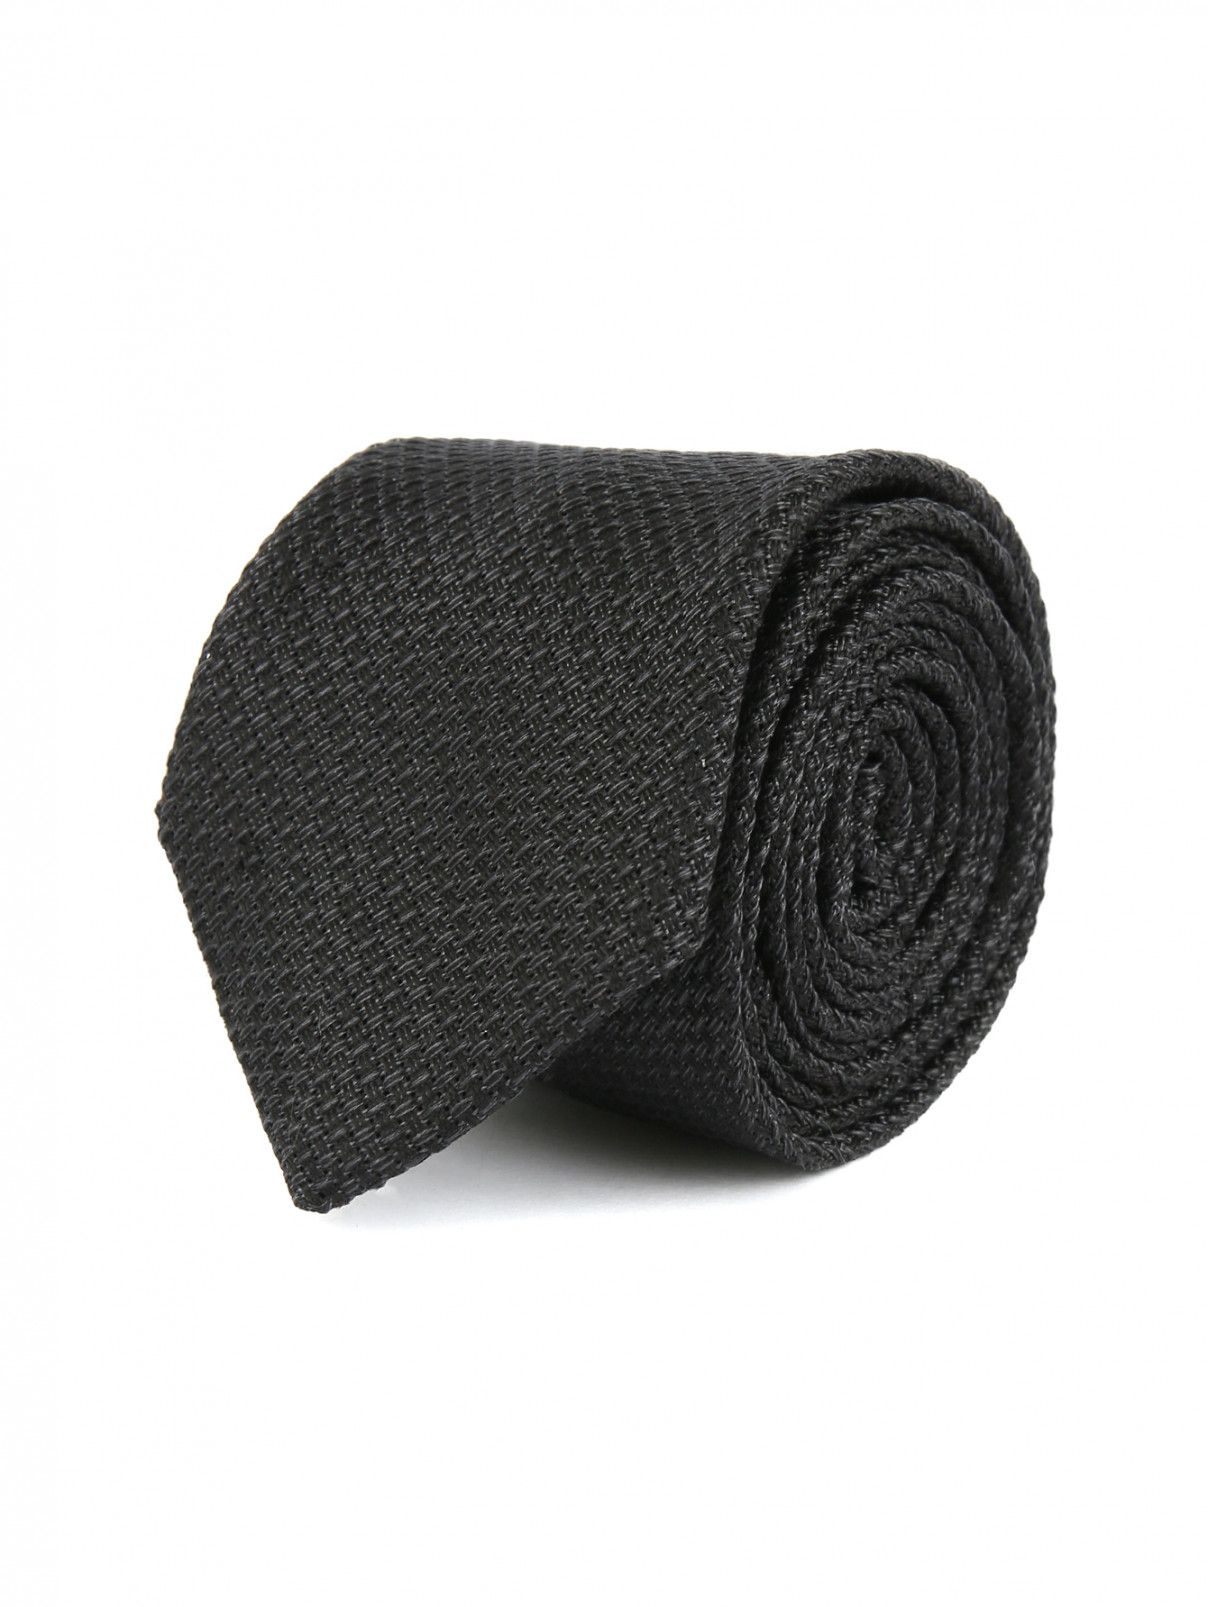 Галстук из шелка Emporio Armani  –  Общий вид  – Цвет:  Черный